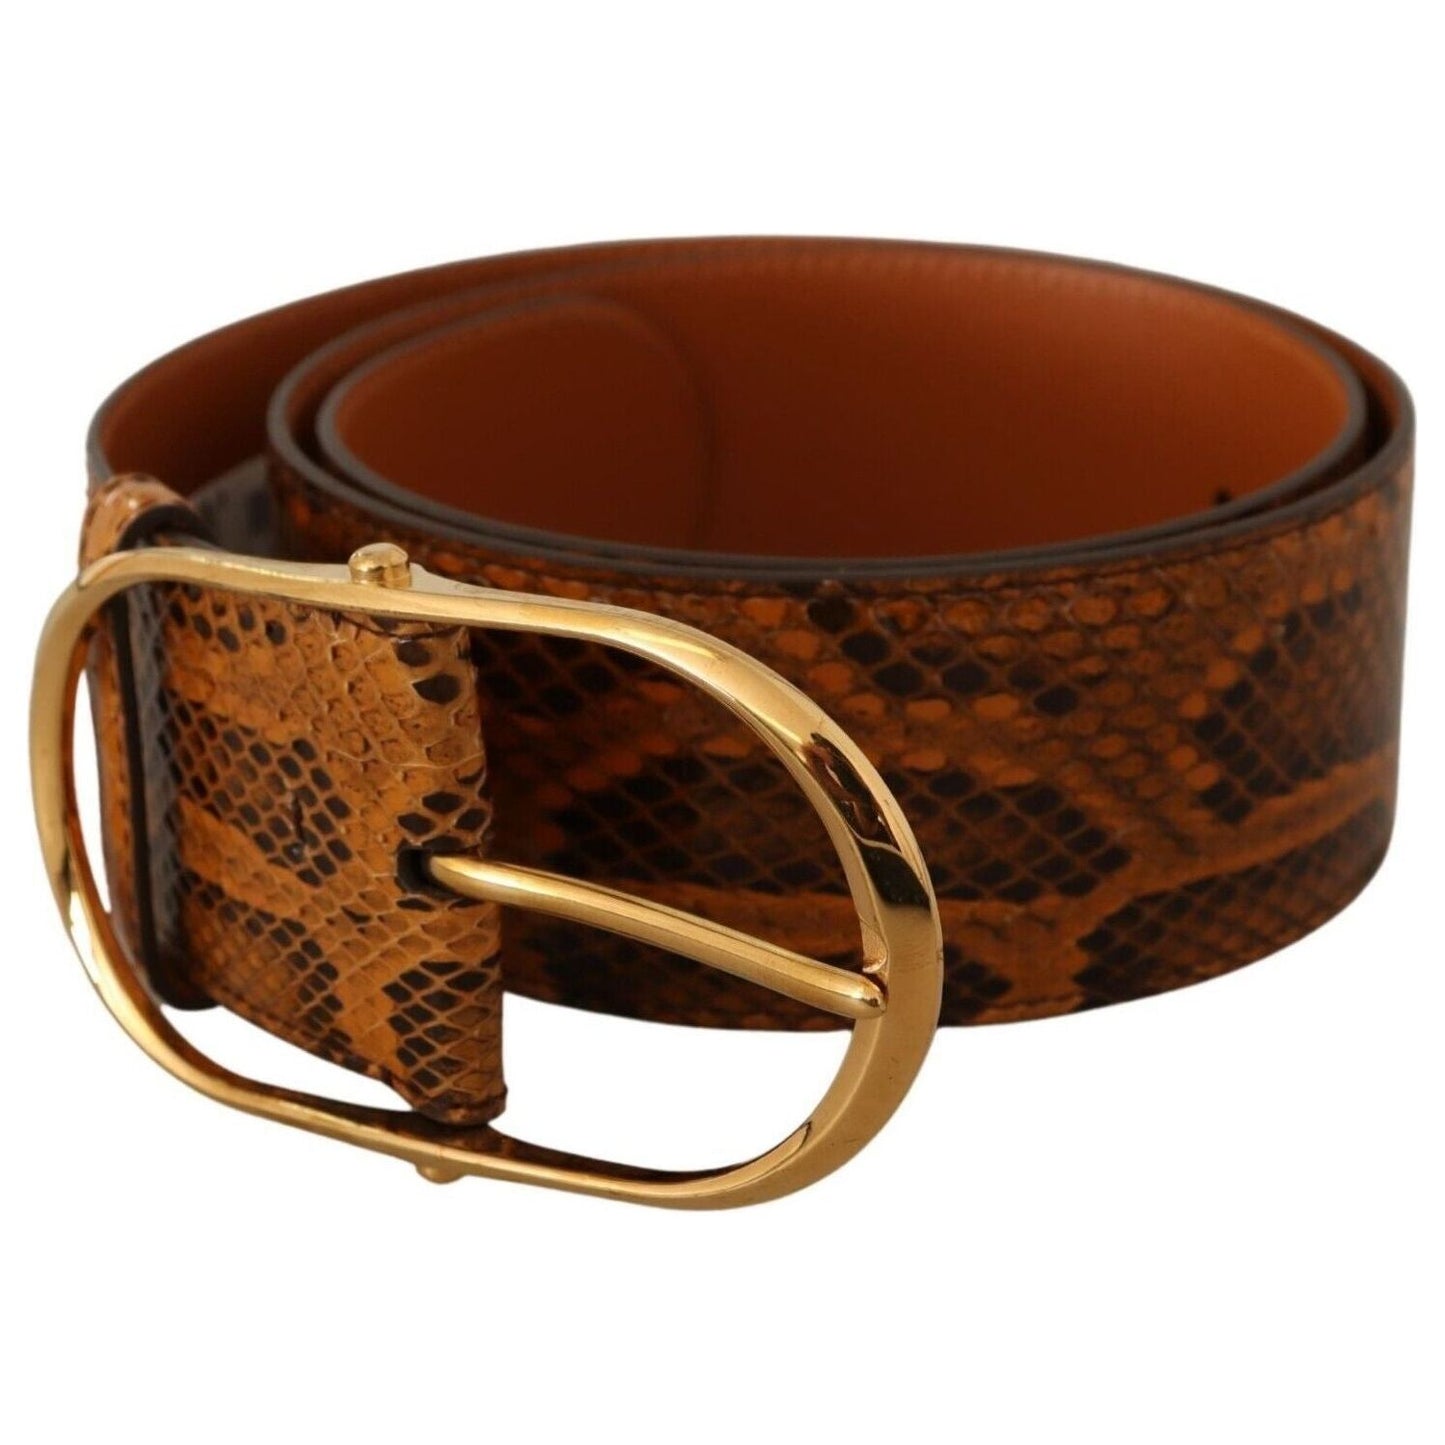 Dolce & Gabbana Elegant Python Skin Leather Belt WOMAN BELTS brown-exotic-leather-gold-oval-buckle-belt